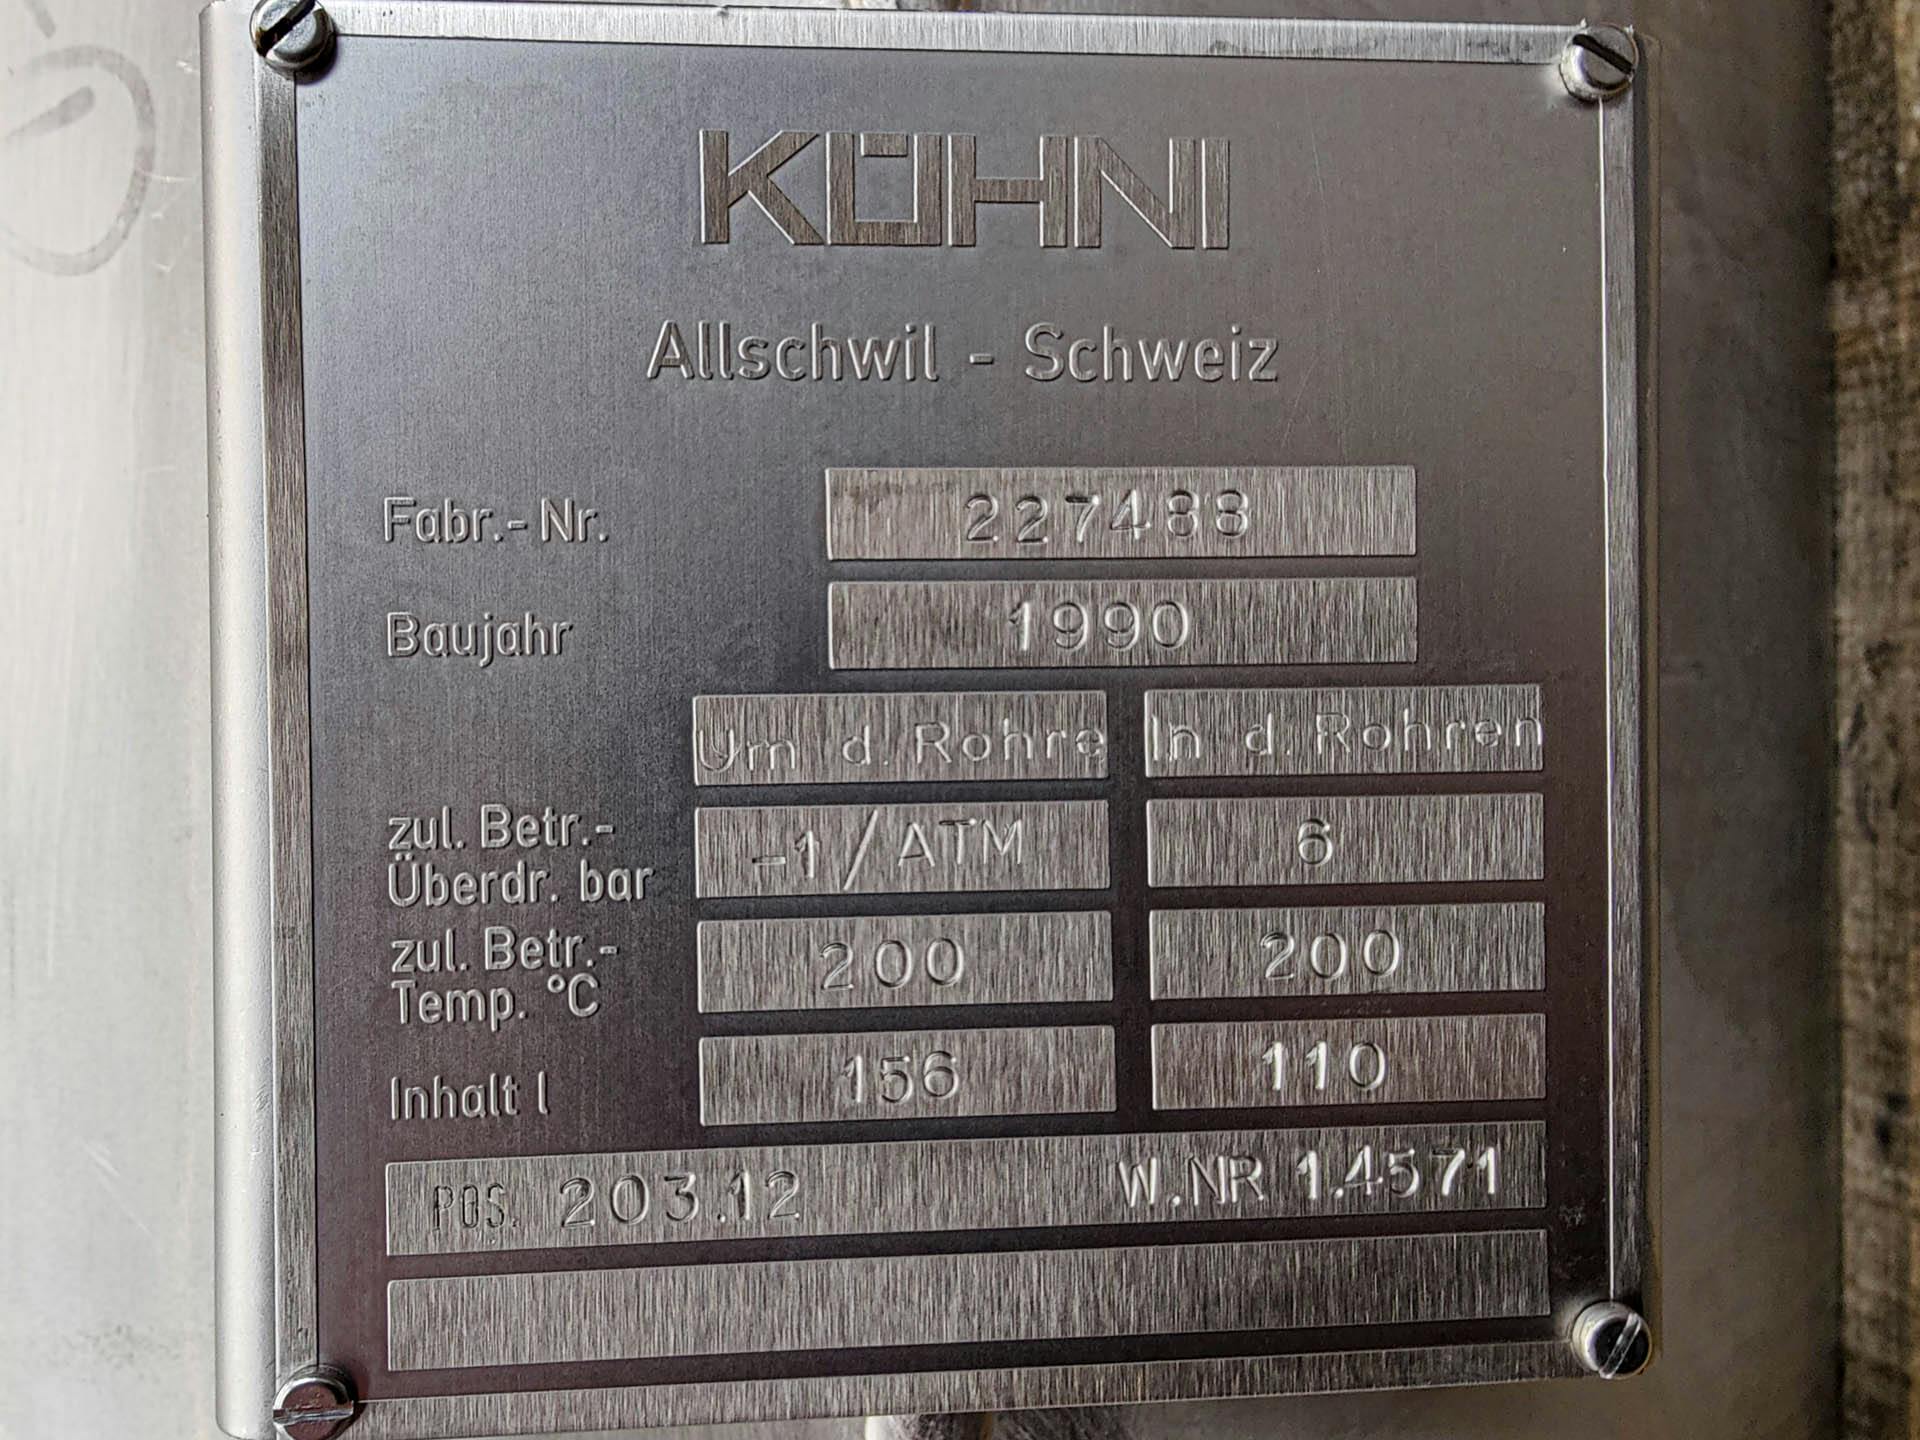 Kuehni condensor - Échangeur de température tubulaire - image 9